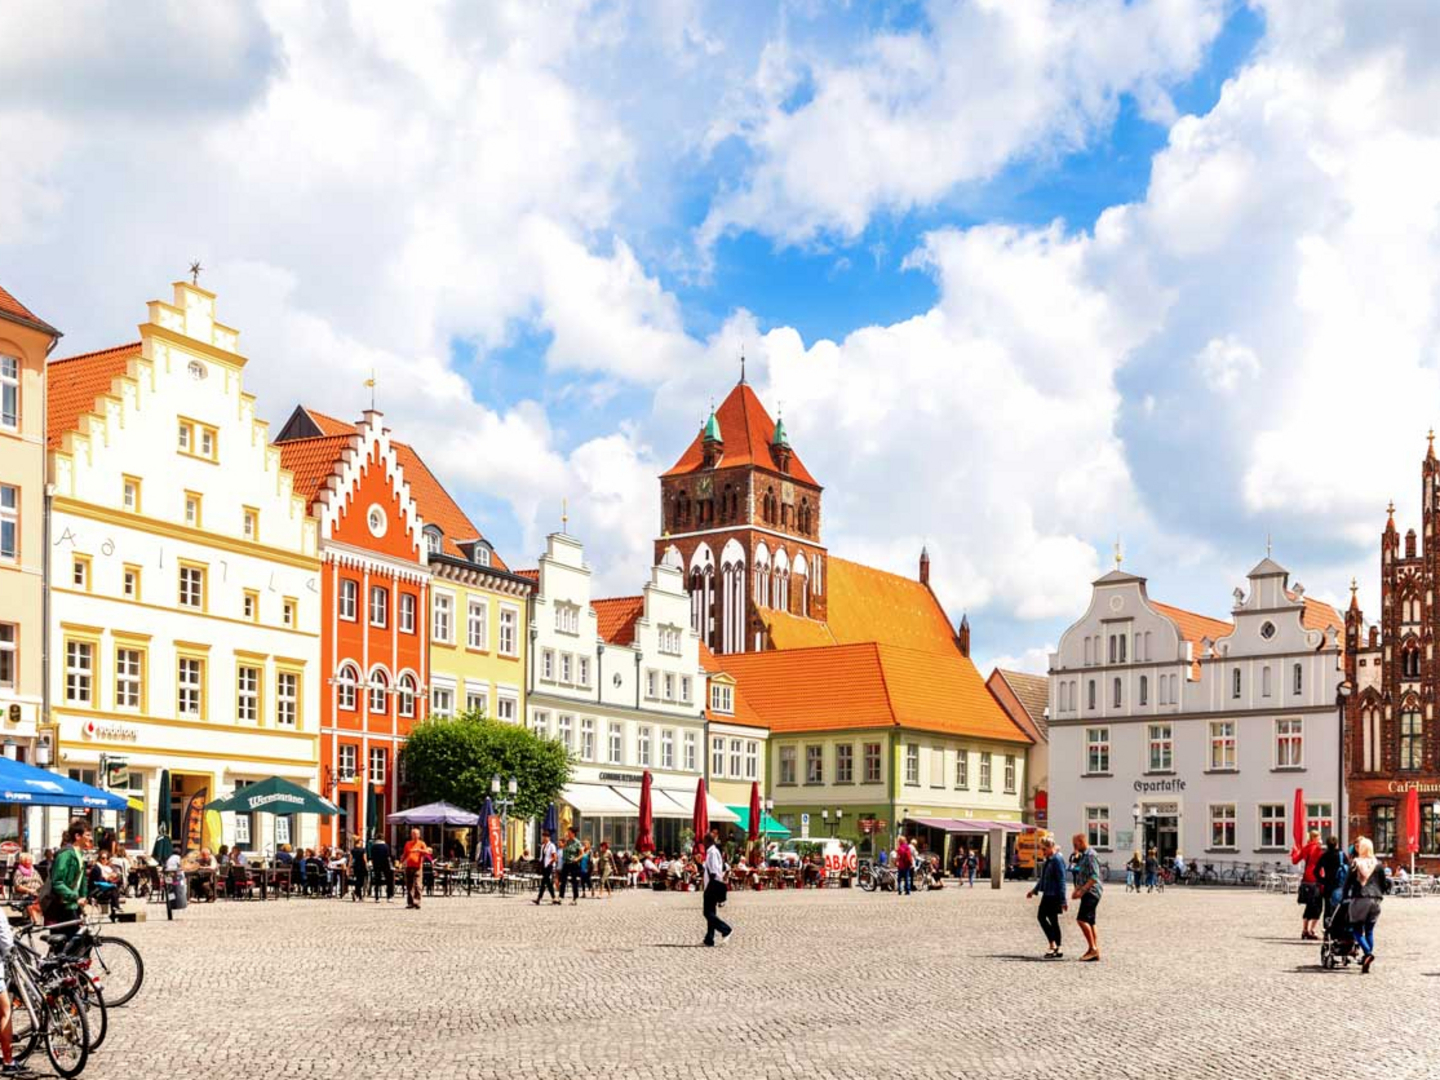 Die Greifswalder Altstadt lädt zum Flanieren, Kaffeetrinken und zu einem Marktbummel ein.